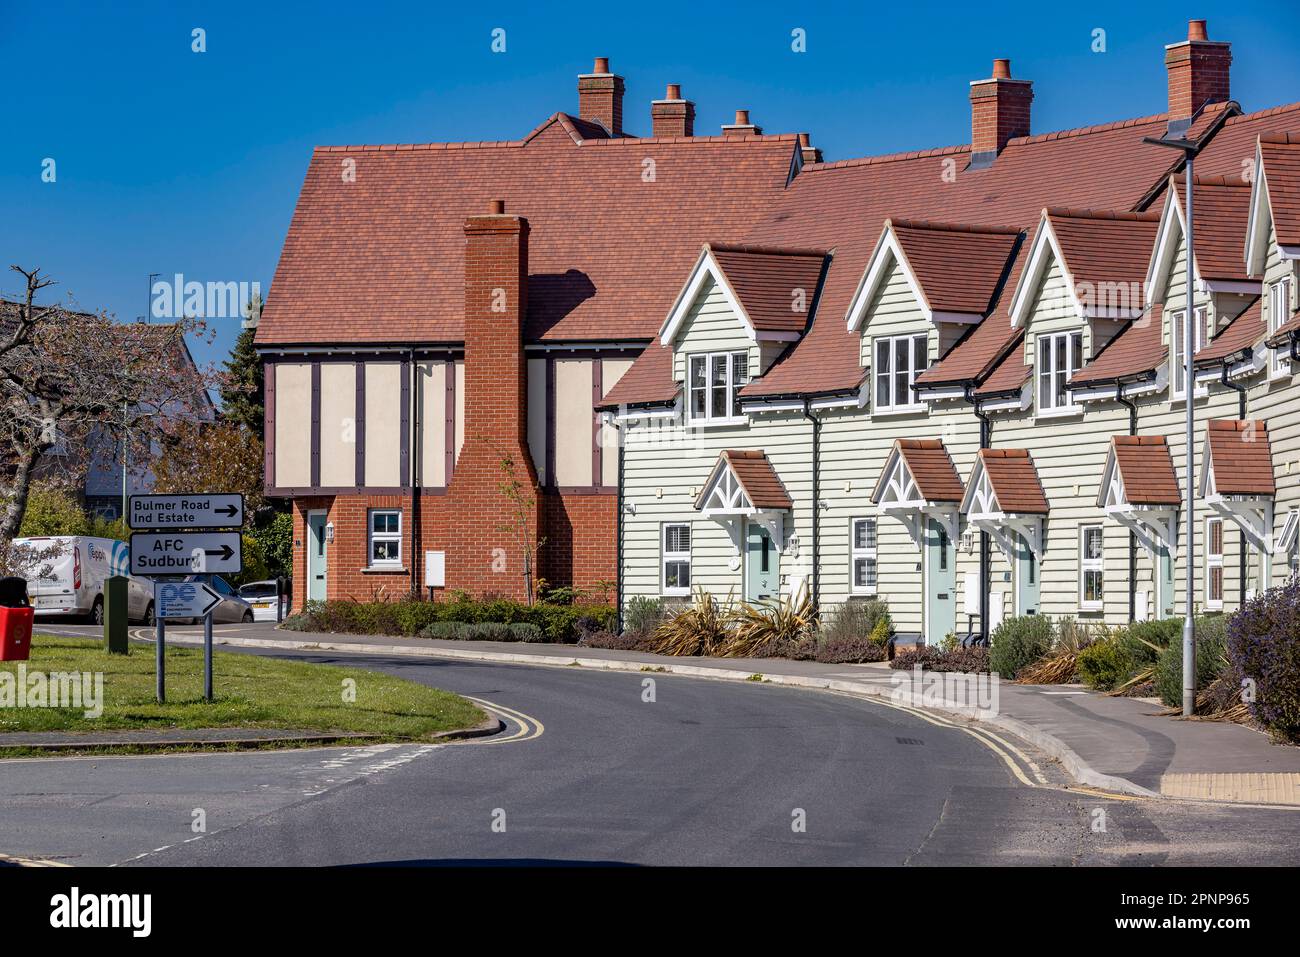 Images de la région de Sudbury Suffolk, Angleterre, Royaume-Uni Banque D'Images